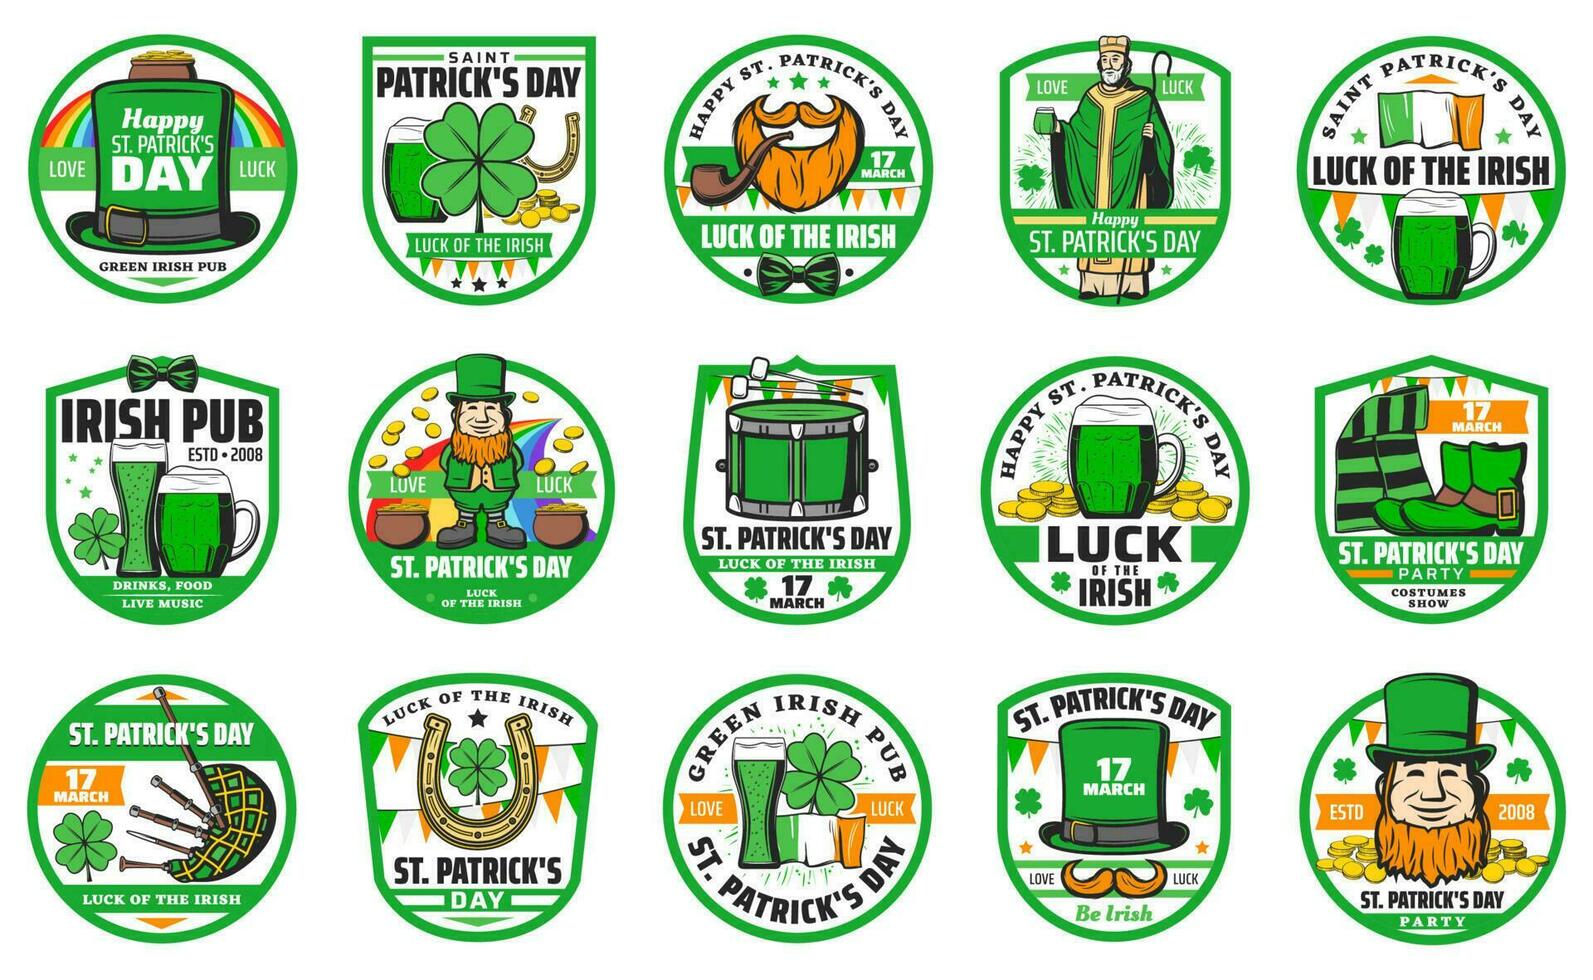 Patricks day holiday badges and symbols vector